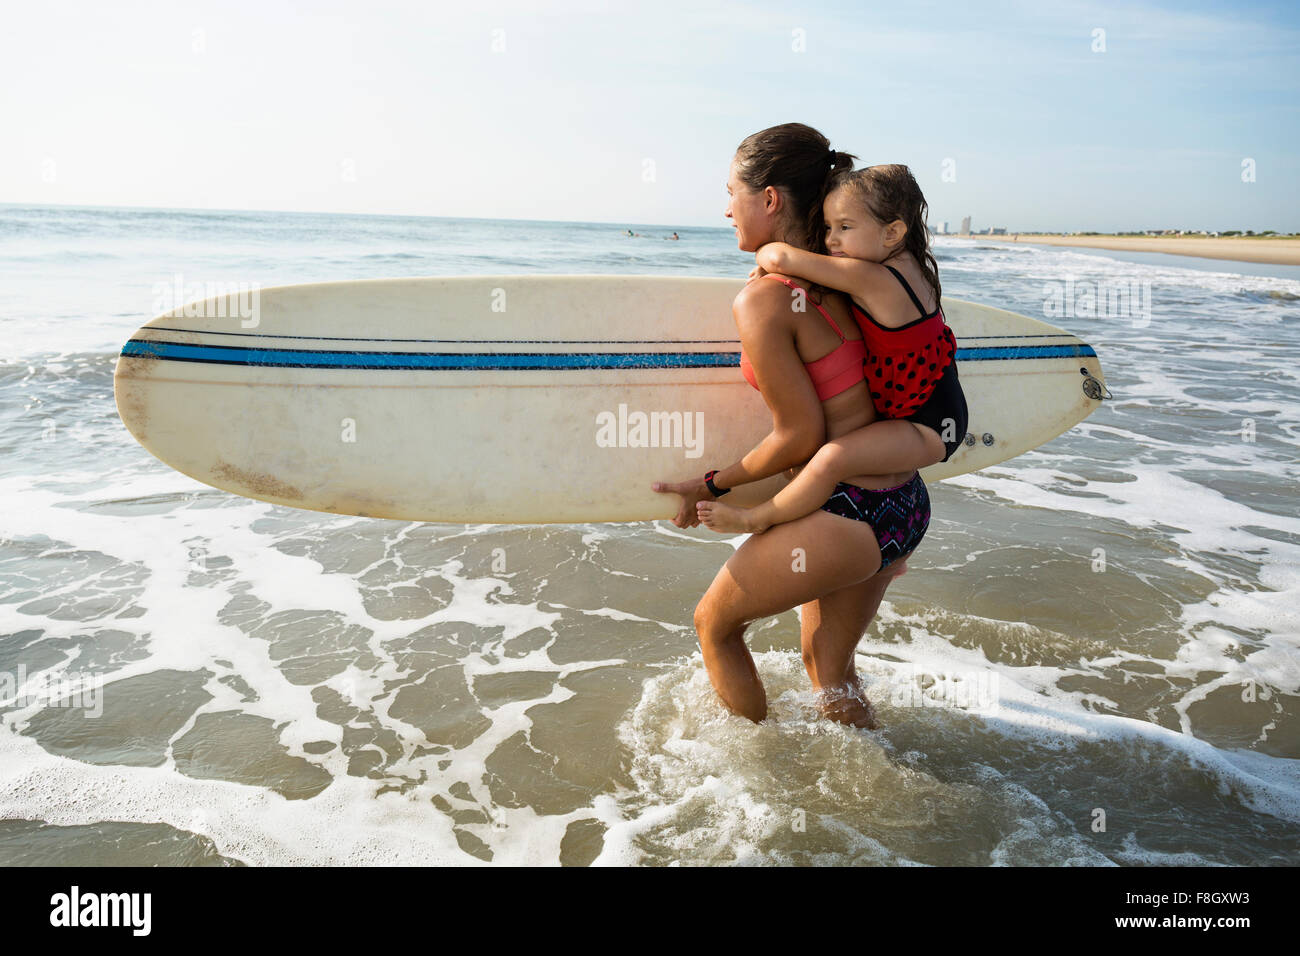 L'exécution de la mère et fille surfboard on beach Banque D'Images